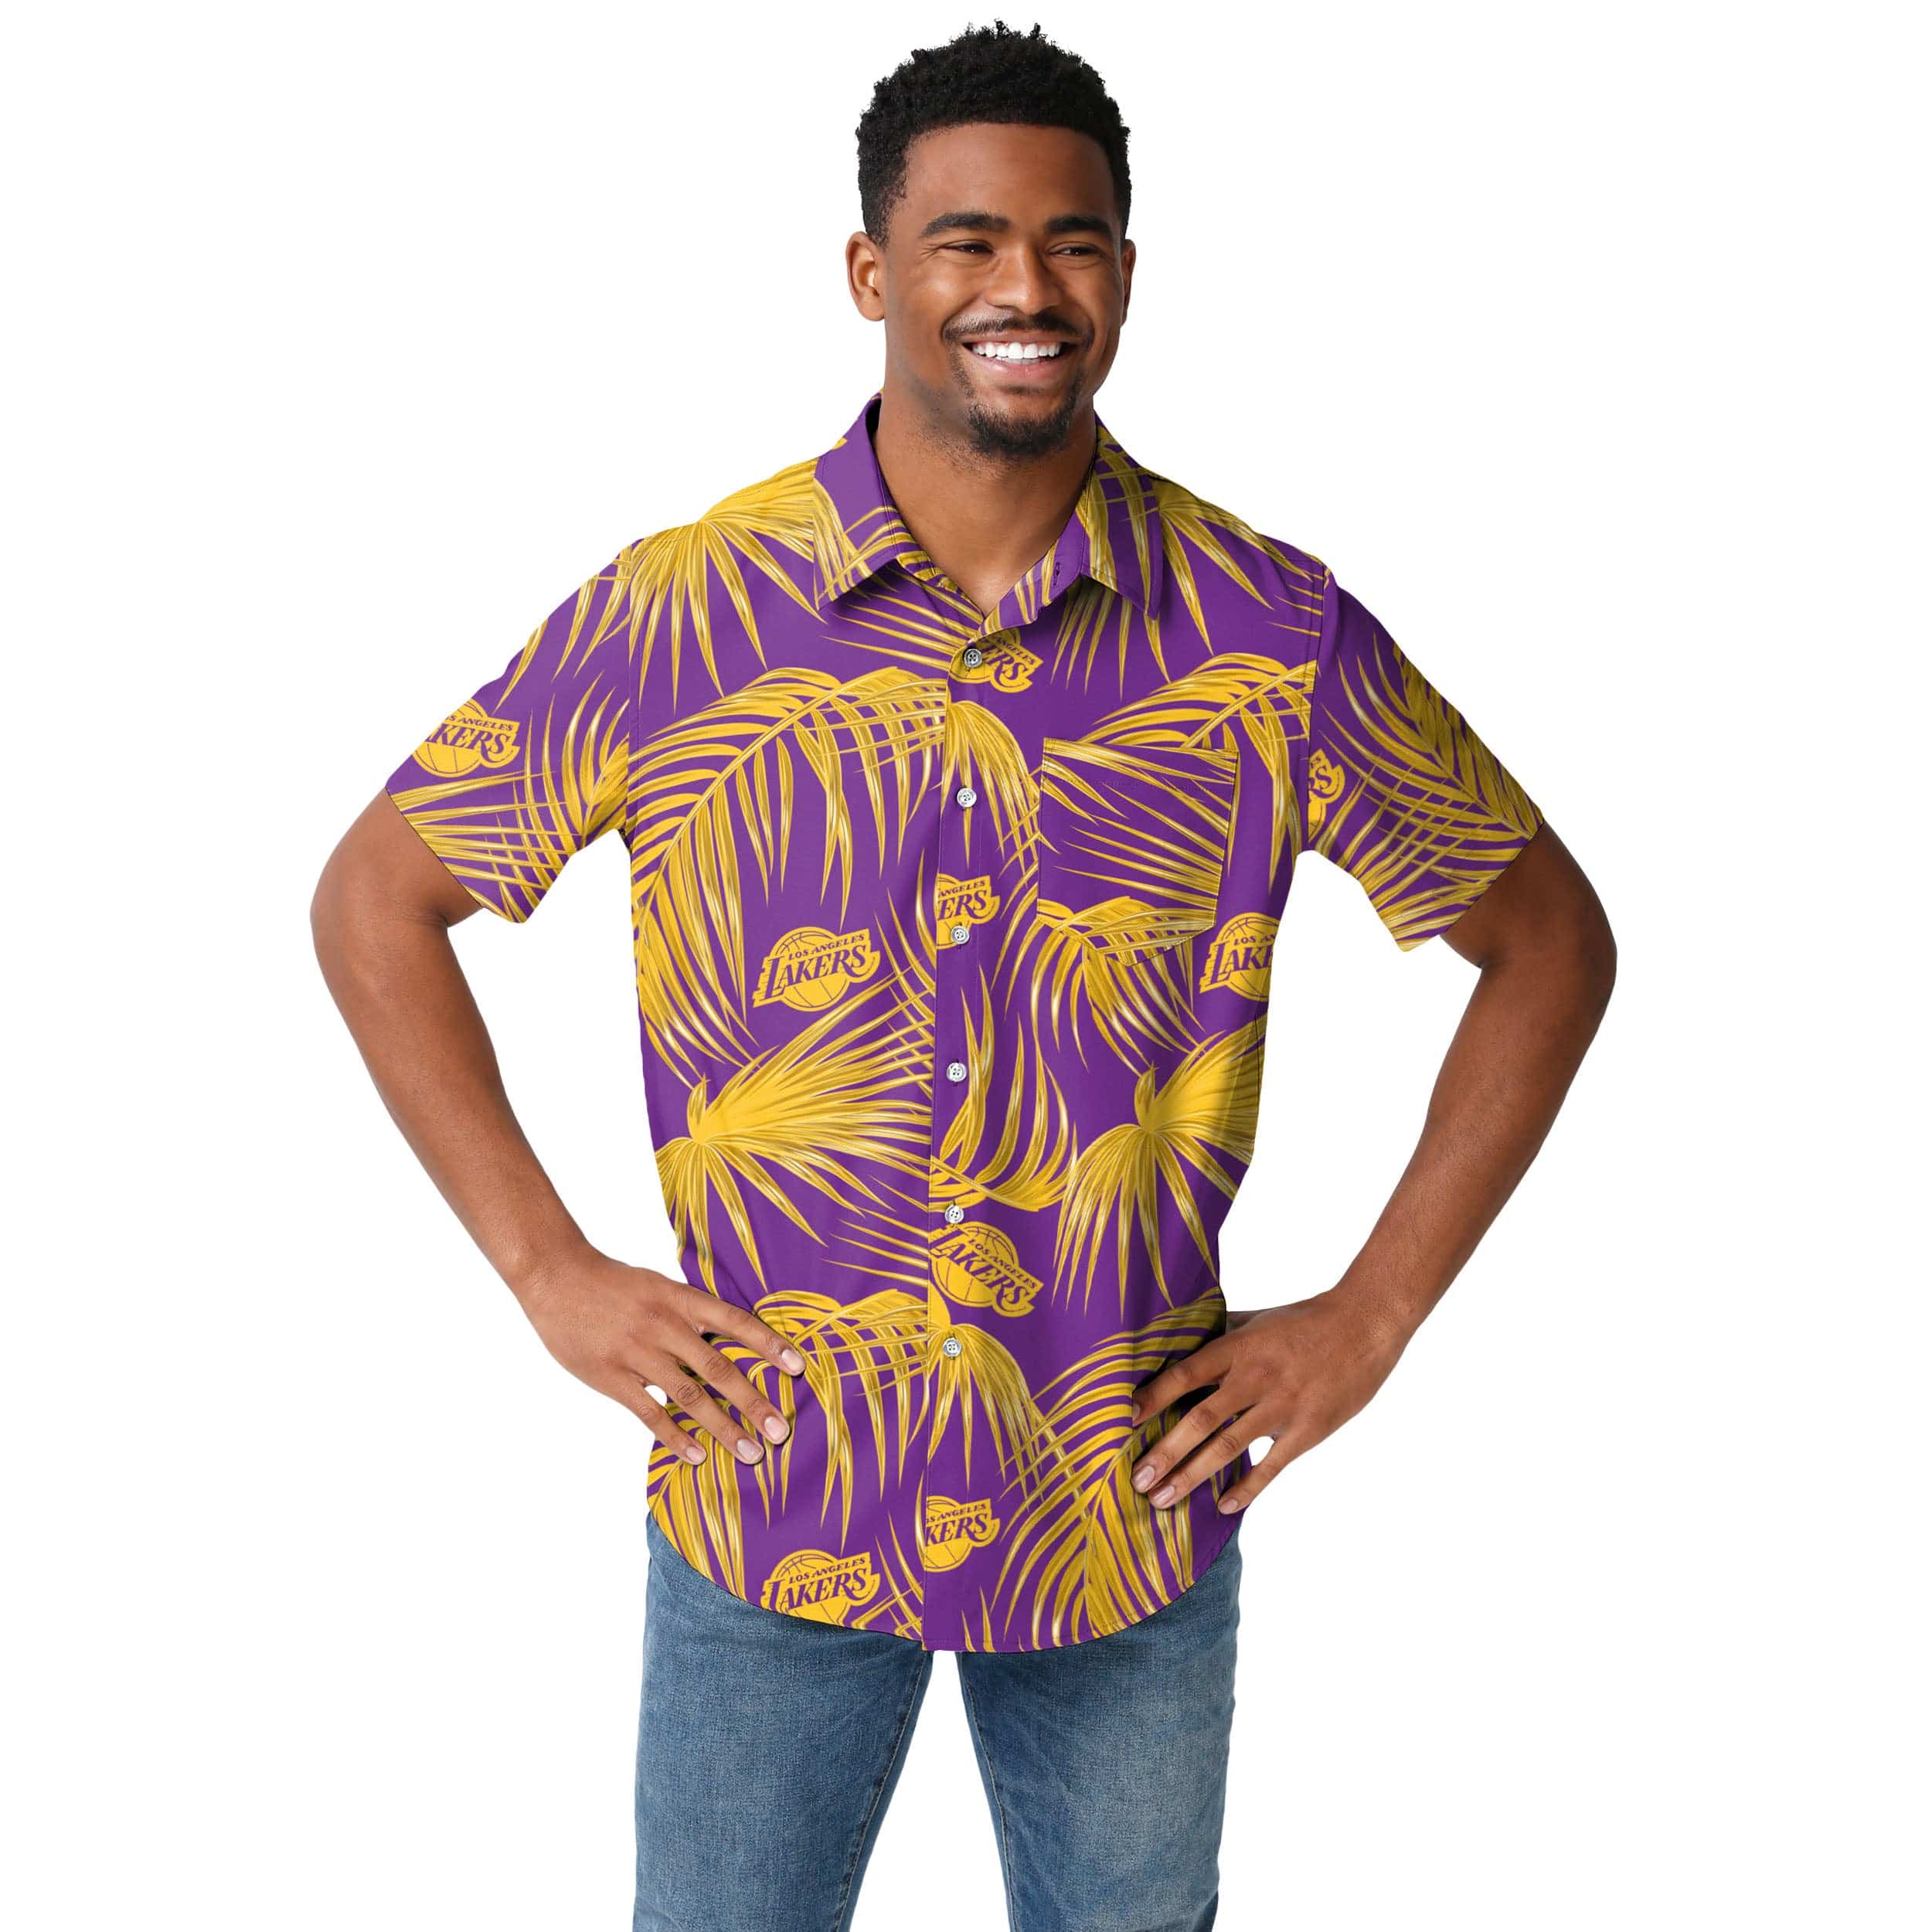 lakers hawaiian jersey